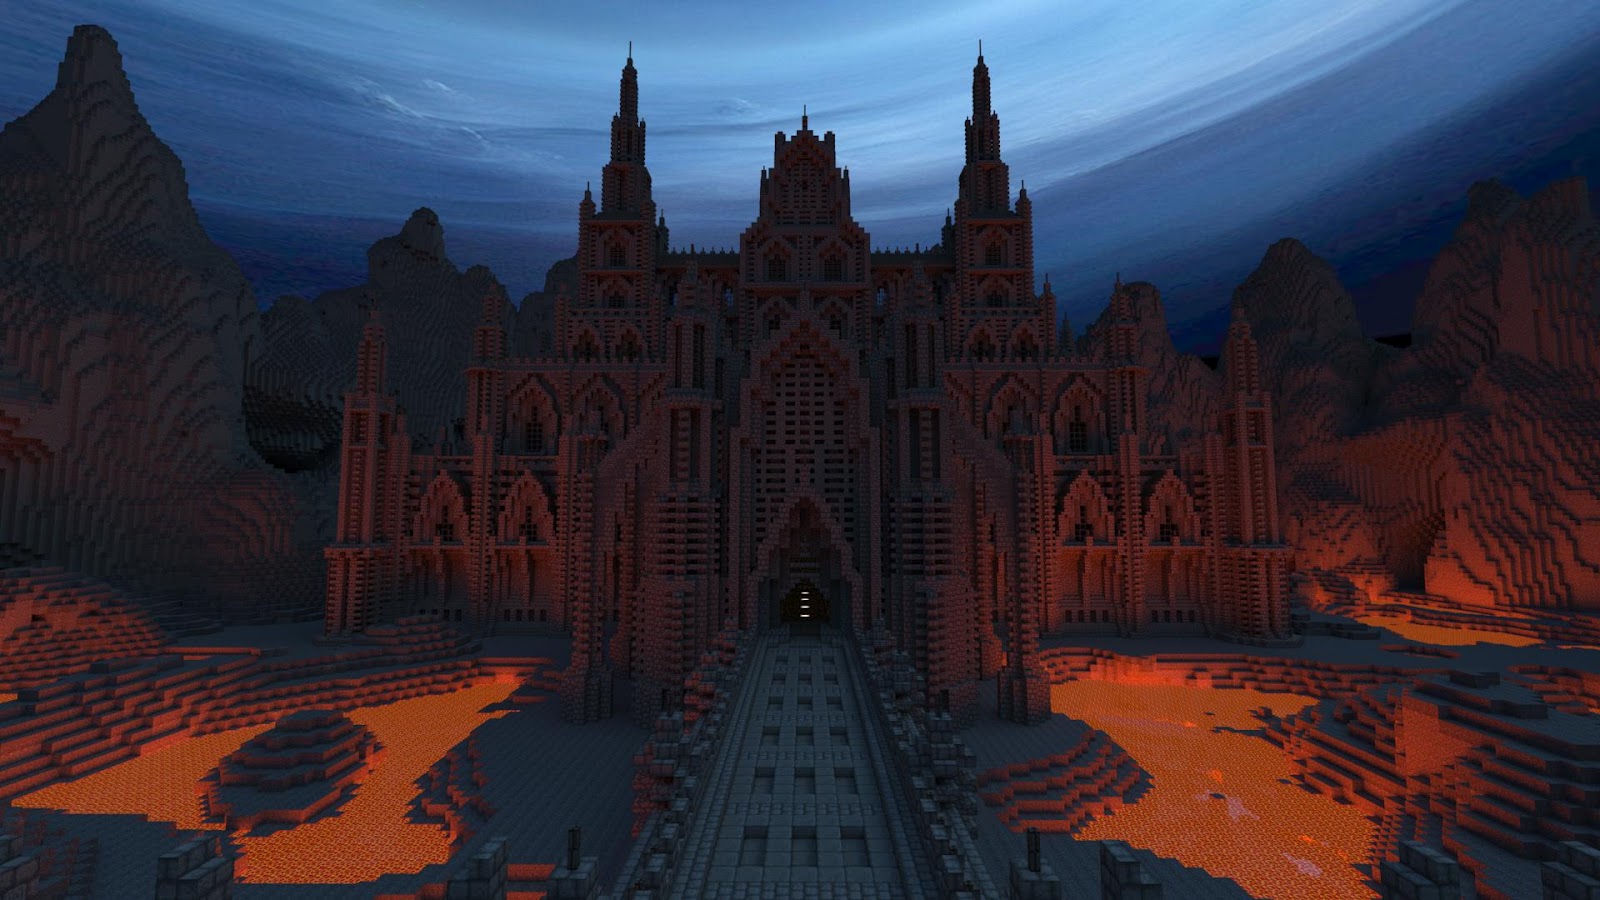 Dark Gothic Minecraft Castle.jpg. 